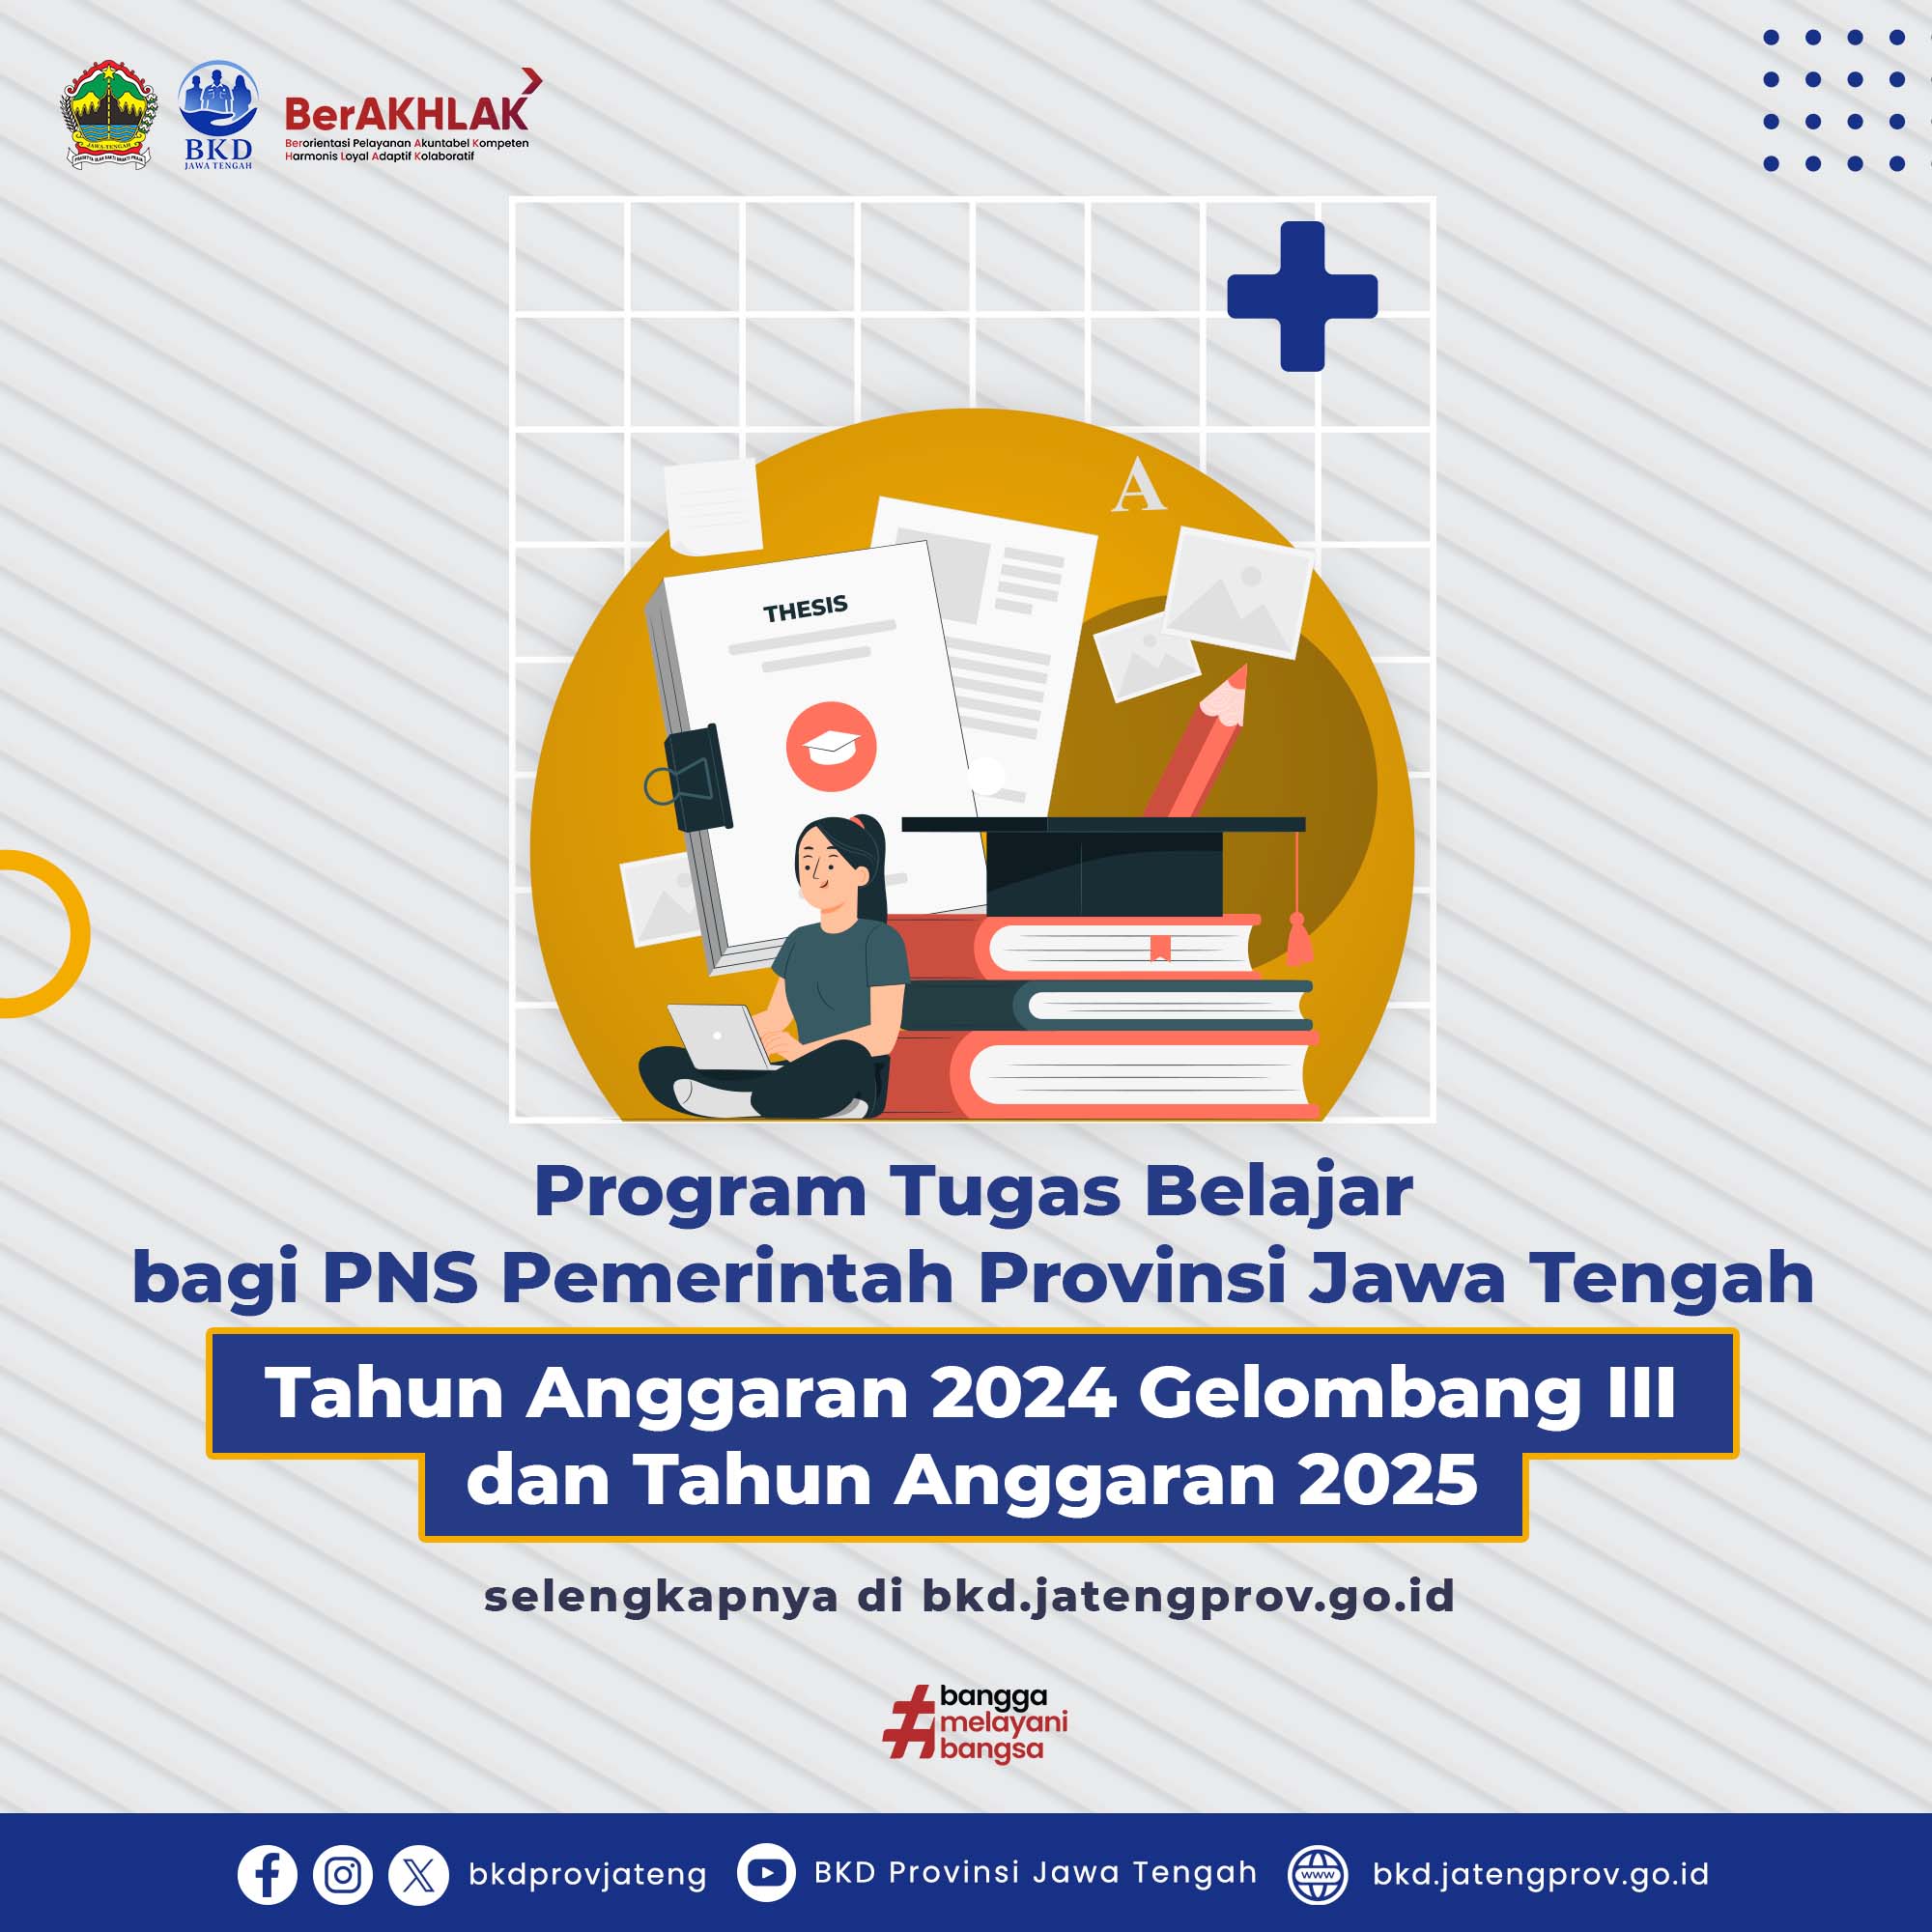 Program Tugas Belajar Pemerintah Provinsi Jawa Tengah Tahun Anggaran 2024 Gelombang III Dan Tahun Anggaran 2025